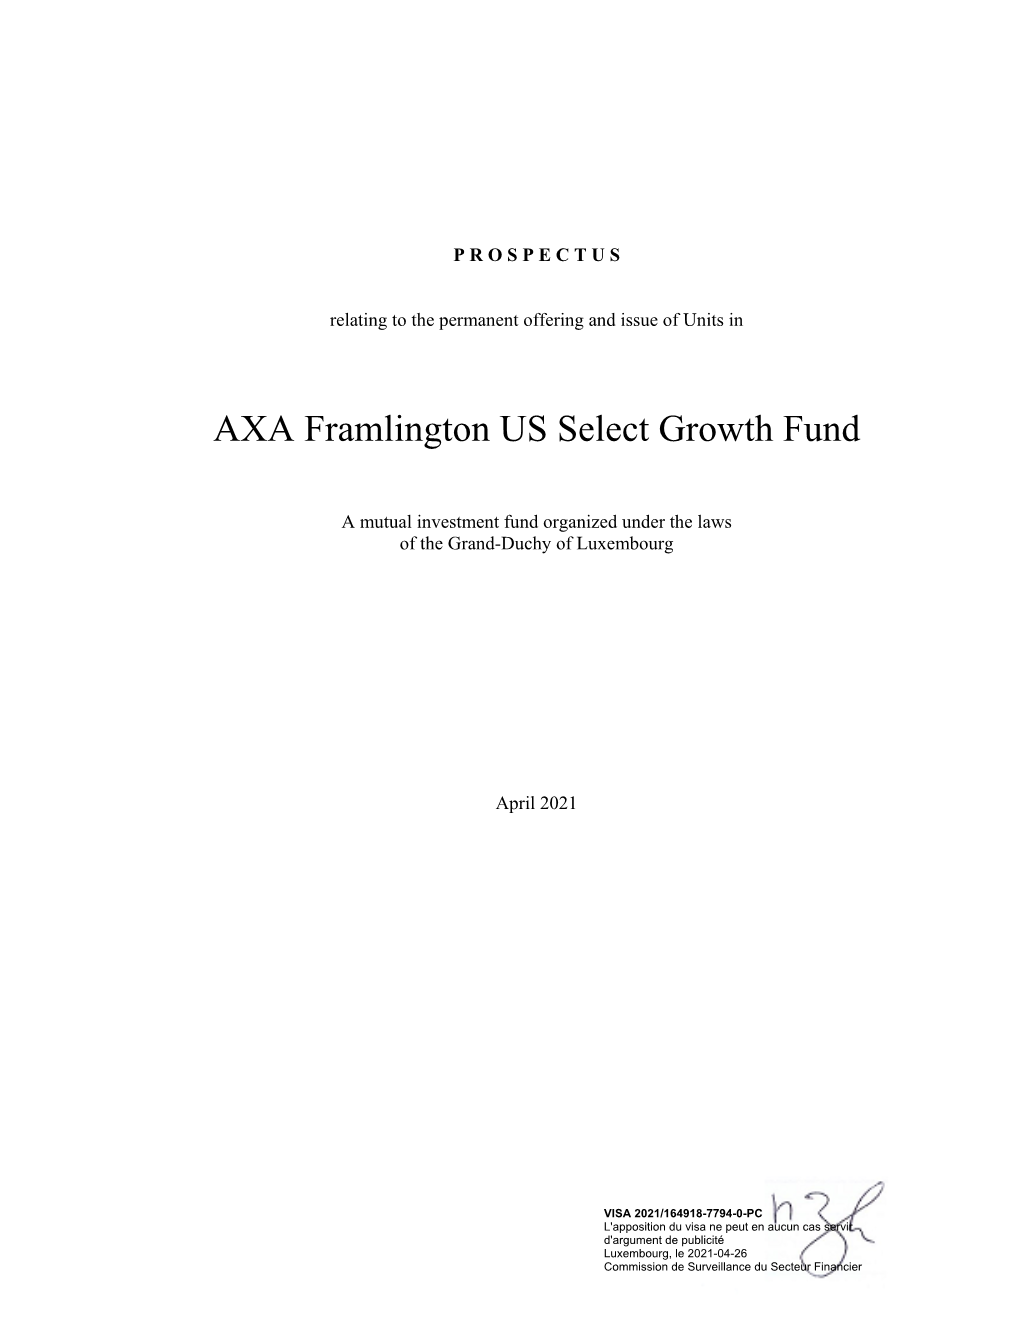 AXA Framlington US Select Growth Fund